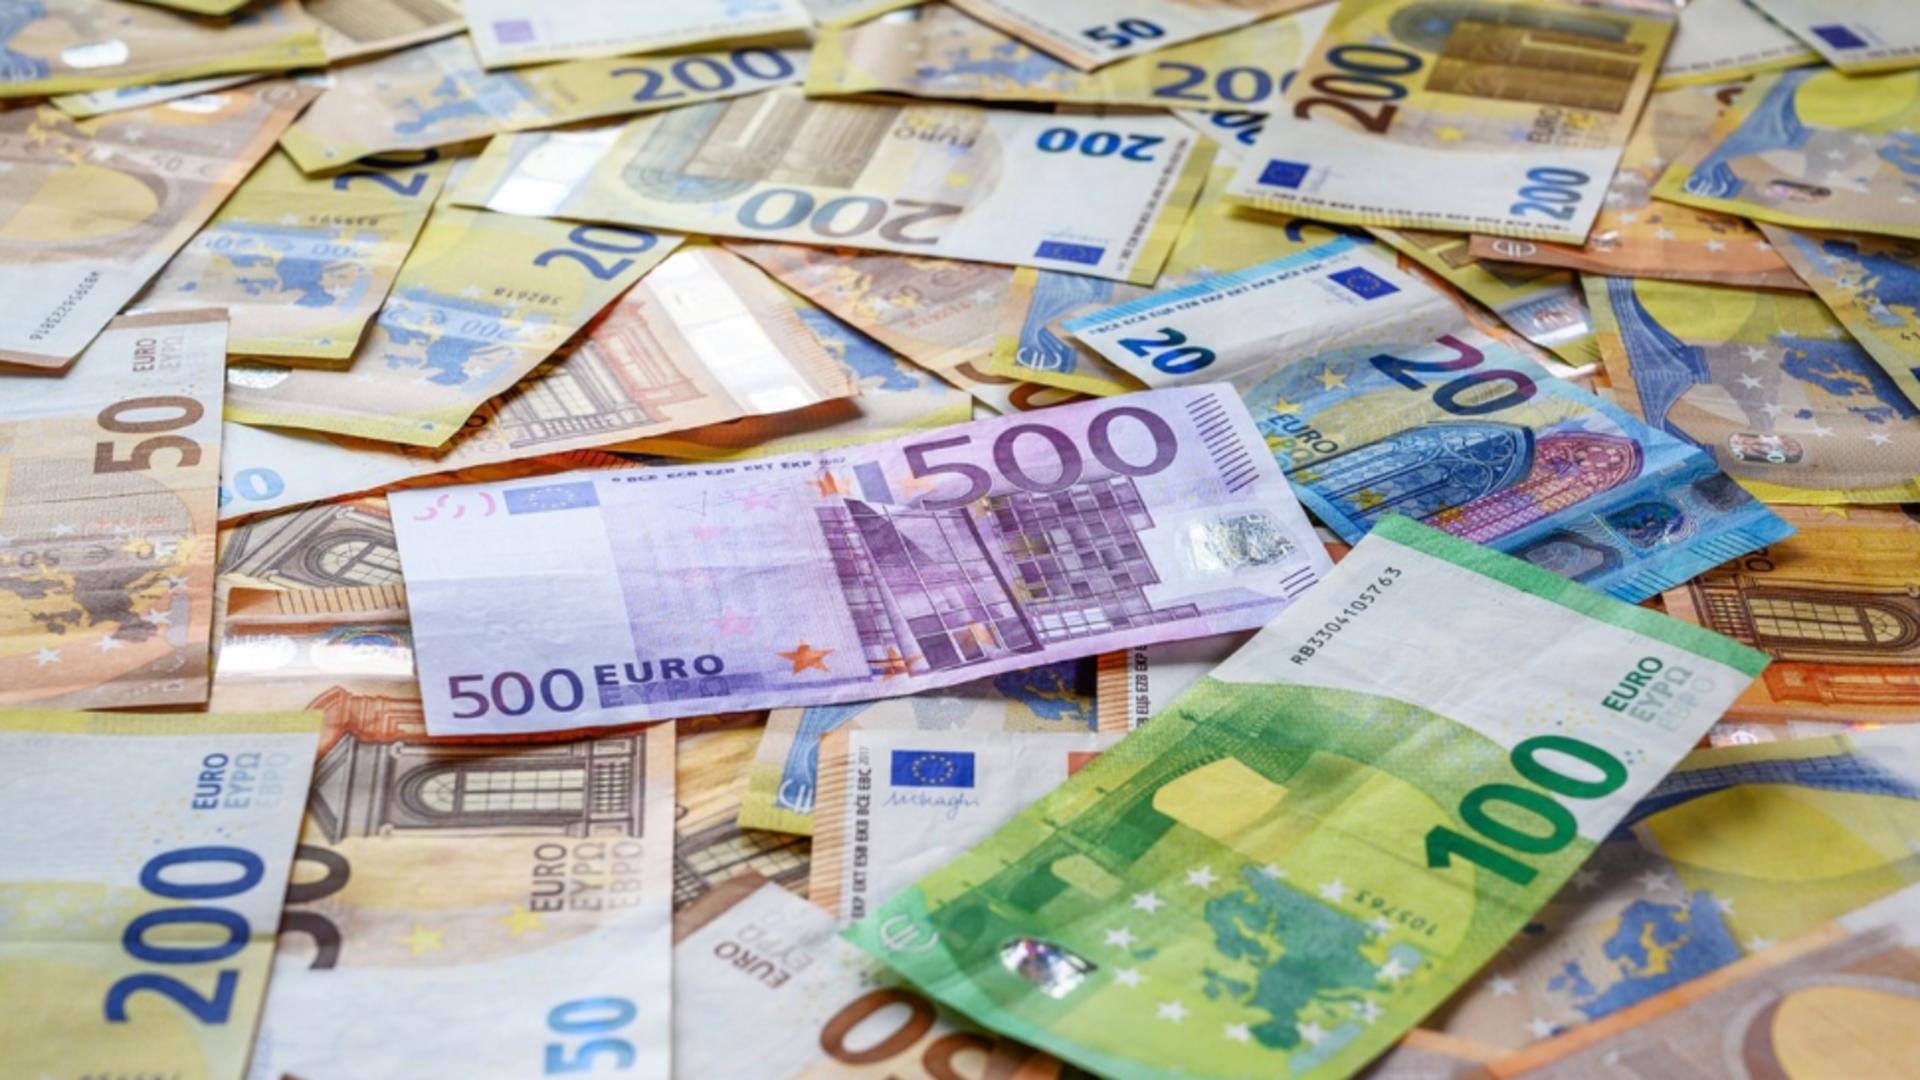 Angajații Primăriei Bacău, premiați cu 10.000 de euro pentru proiecte europene ratate